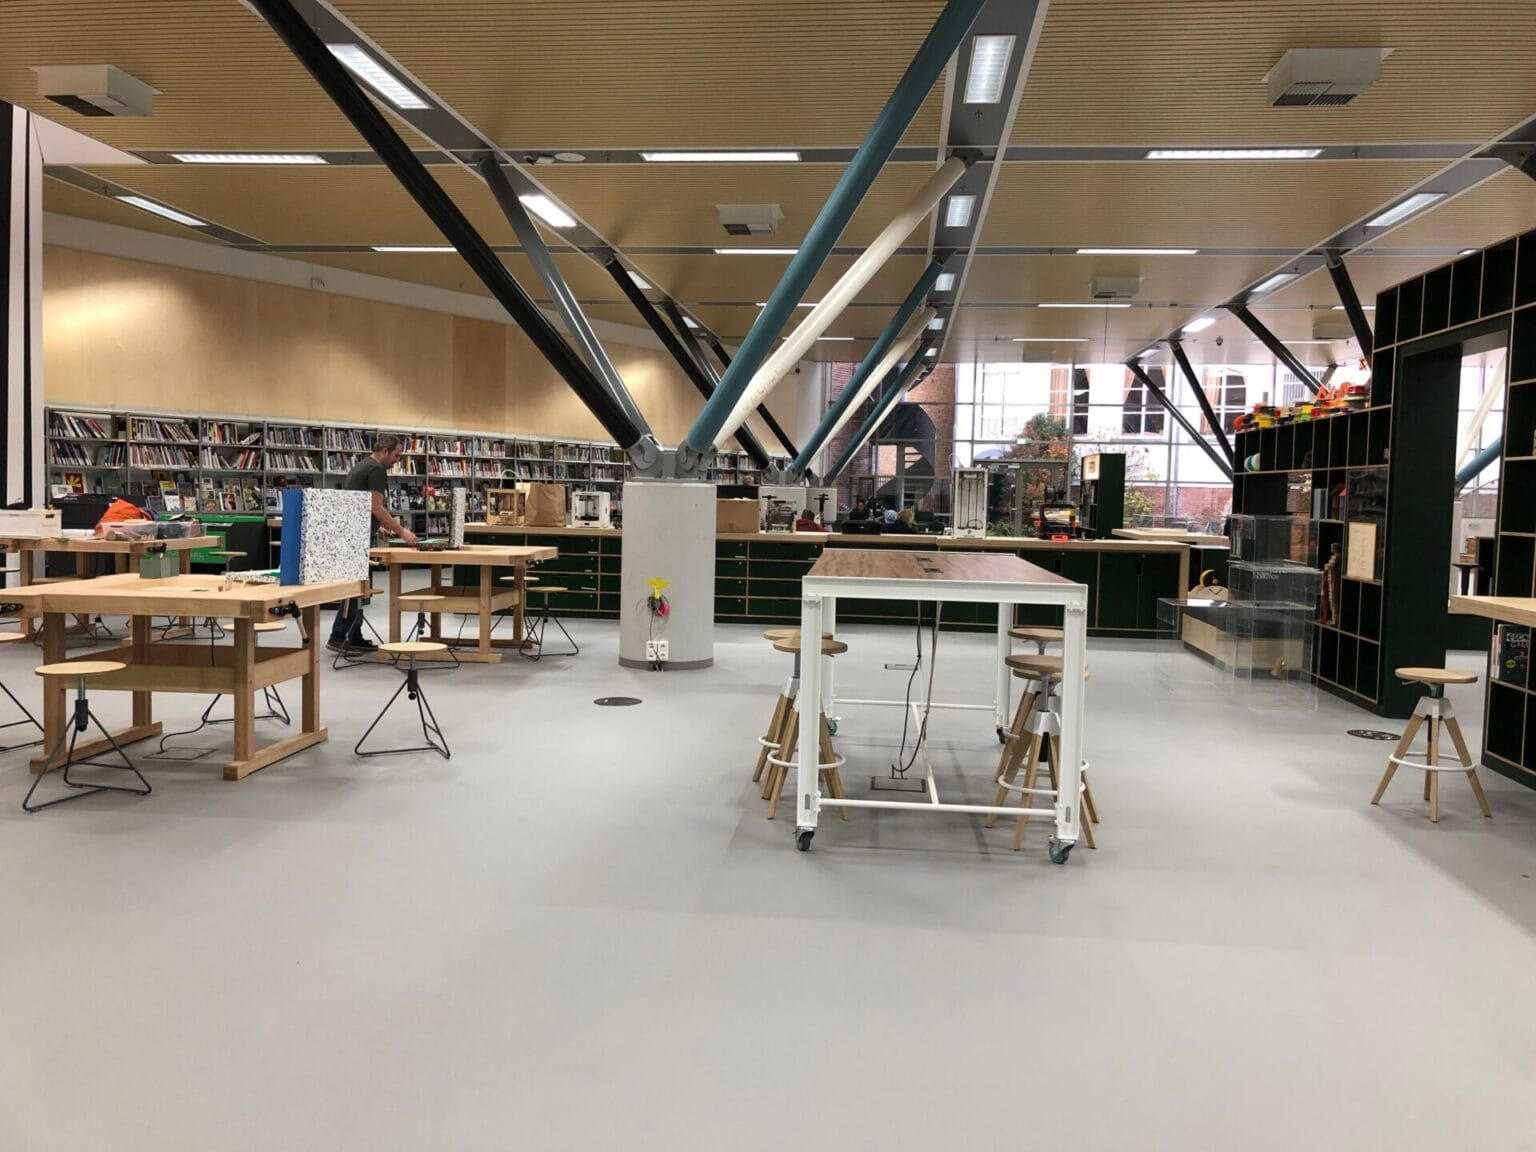 Nieuwe Veste bibliotheek interieur maatwerk kasten betonplex werkbanktafels met kruk Makersbase